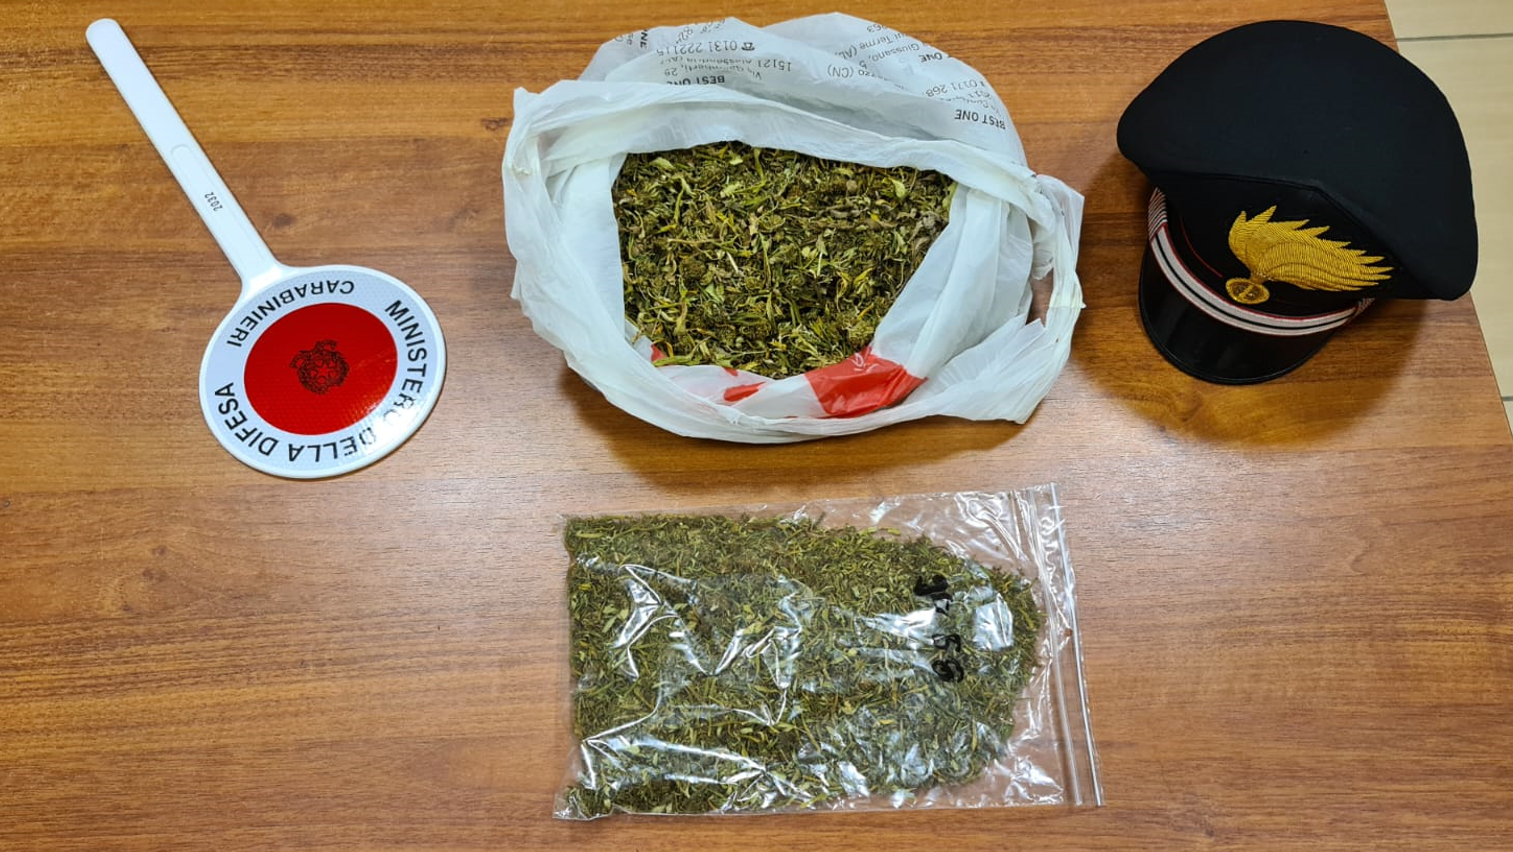 Aveva con sé 410 grammi di marijuana: arrestato a Castelnuovo Scrivia